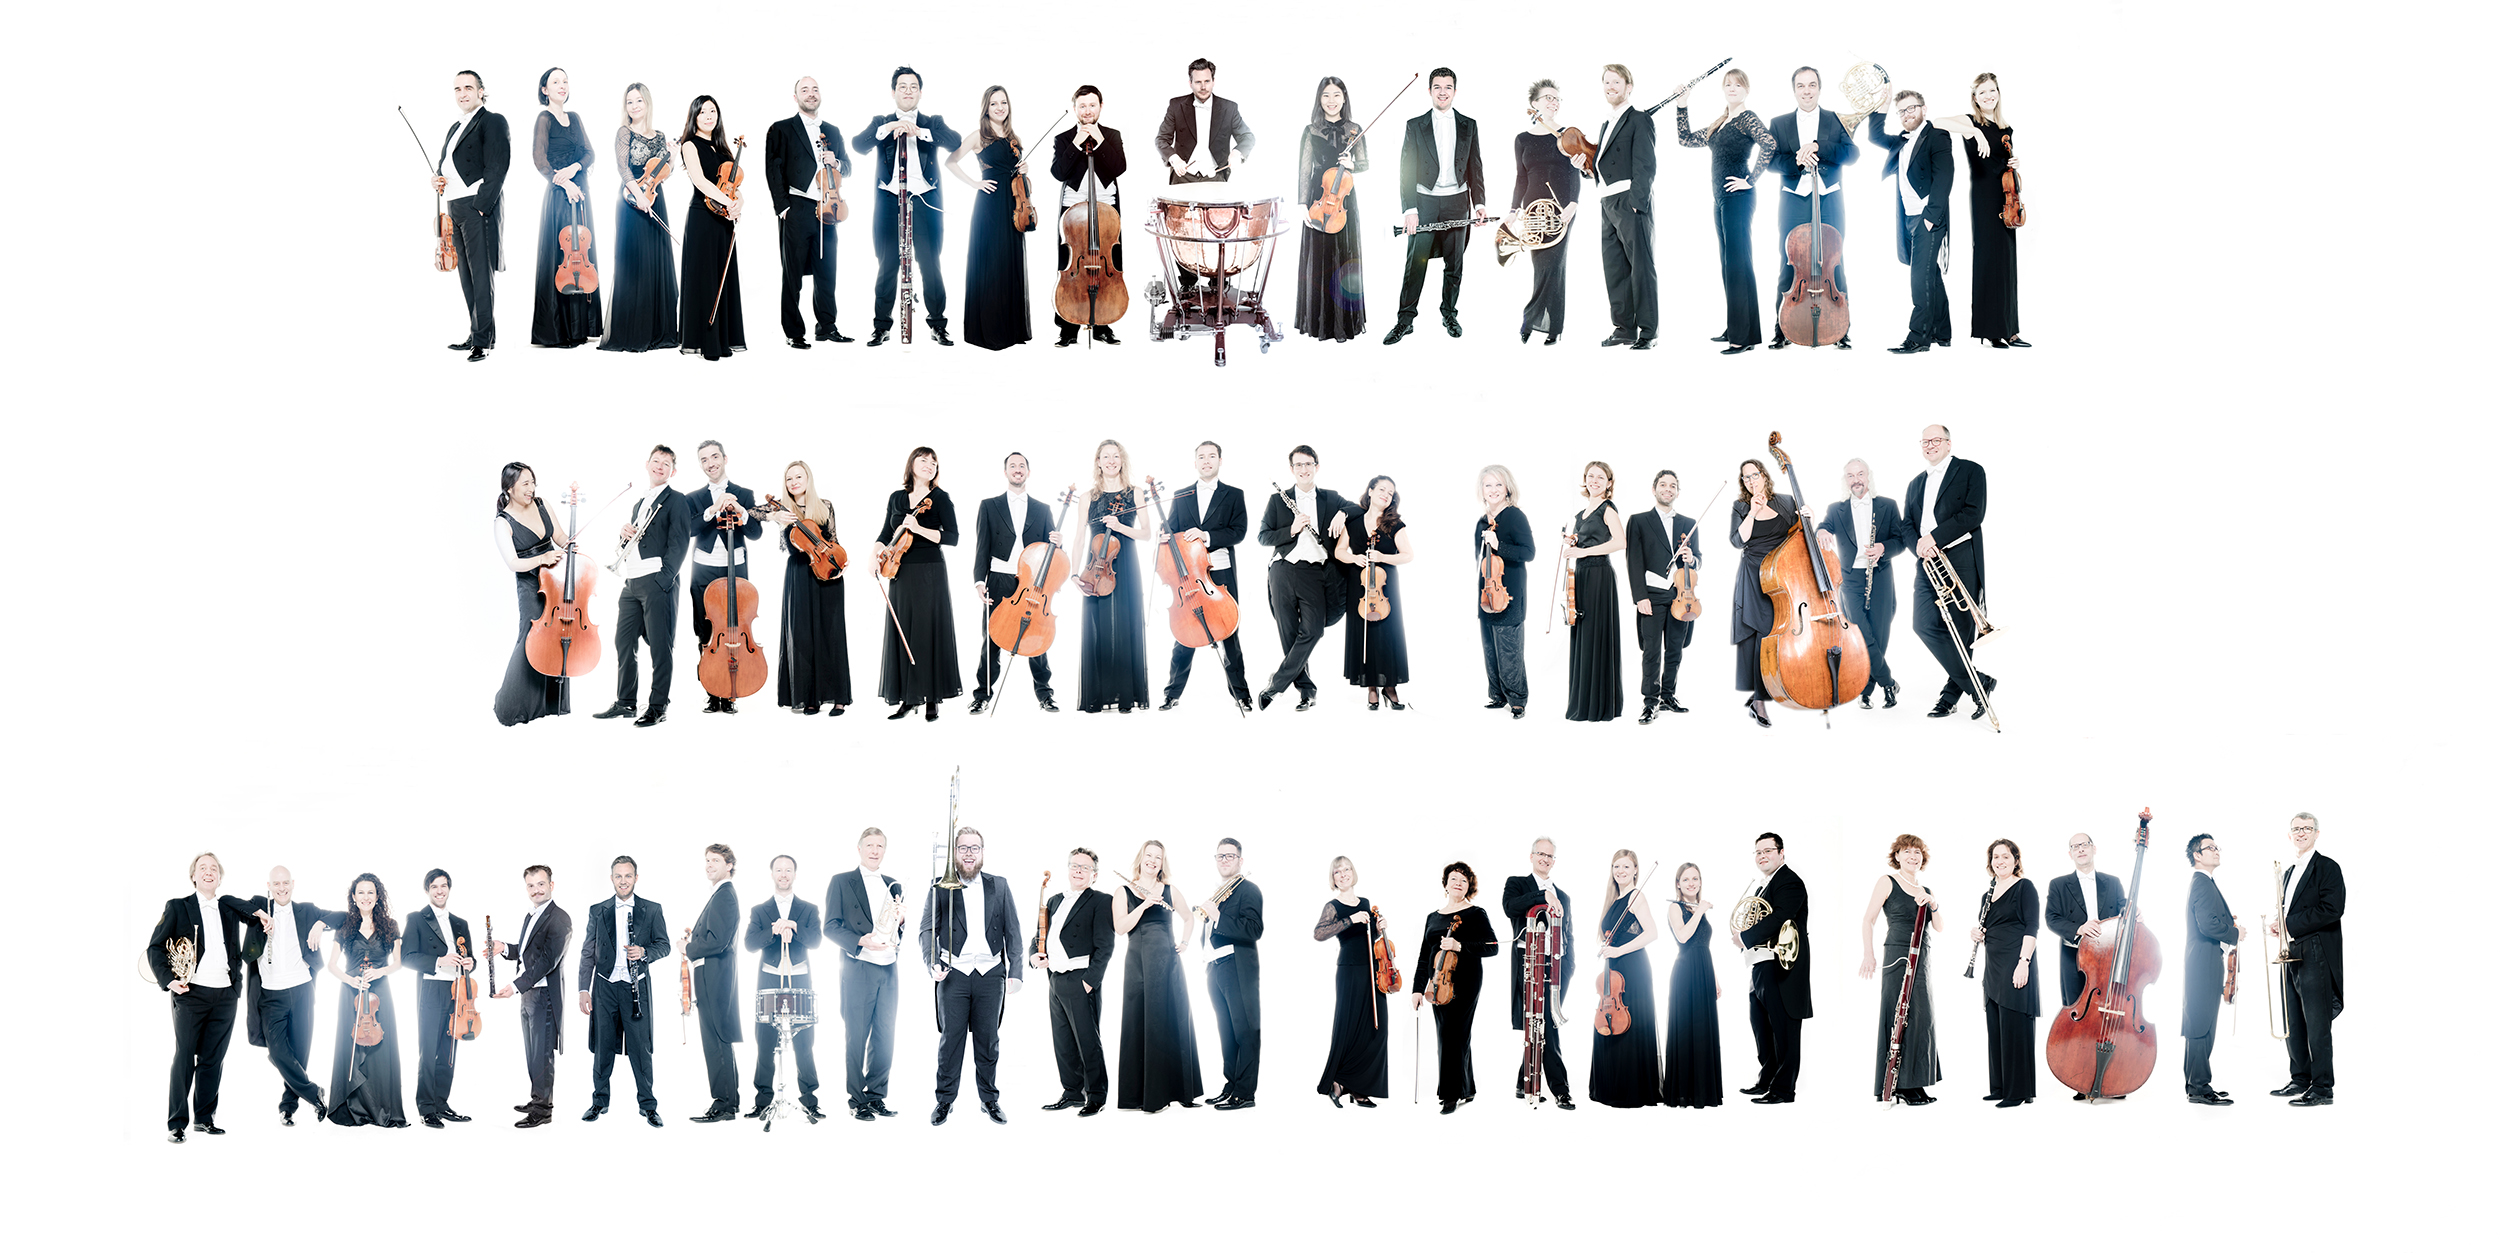 Die Musiker*innen mit ihren Instrumenten stehen in einer lockeren Reihe vor weißem Hintergrund.